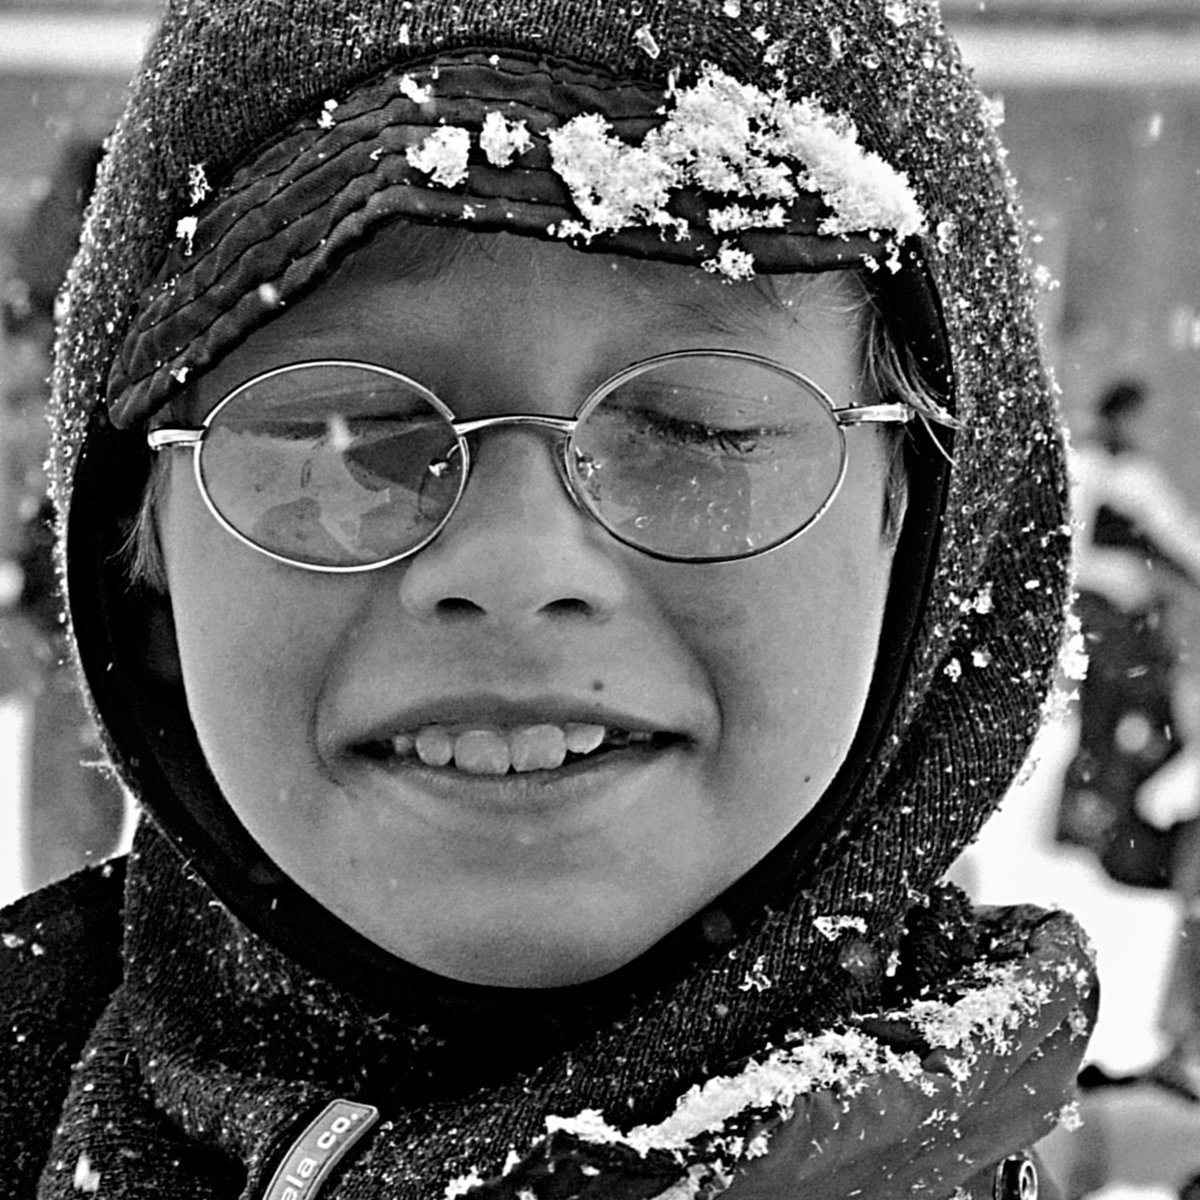 портрет, мальчишка, глаза, взгляд, снежинки, очки, чб, апатиты, Николай Смоляк